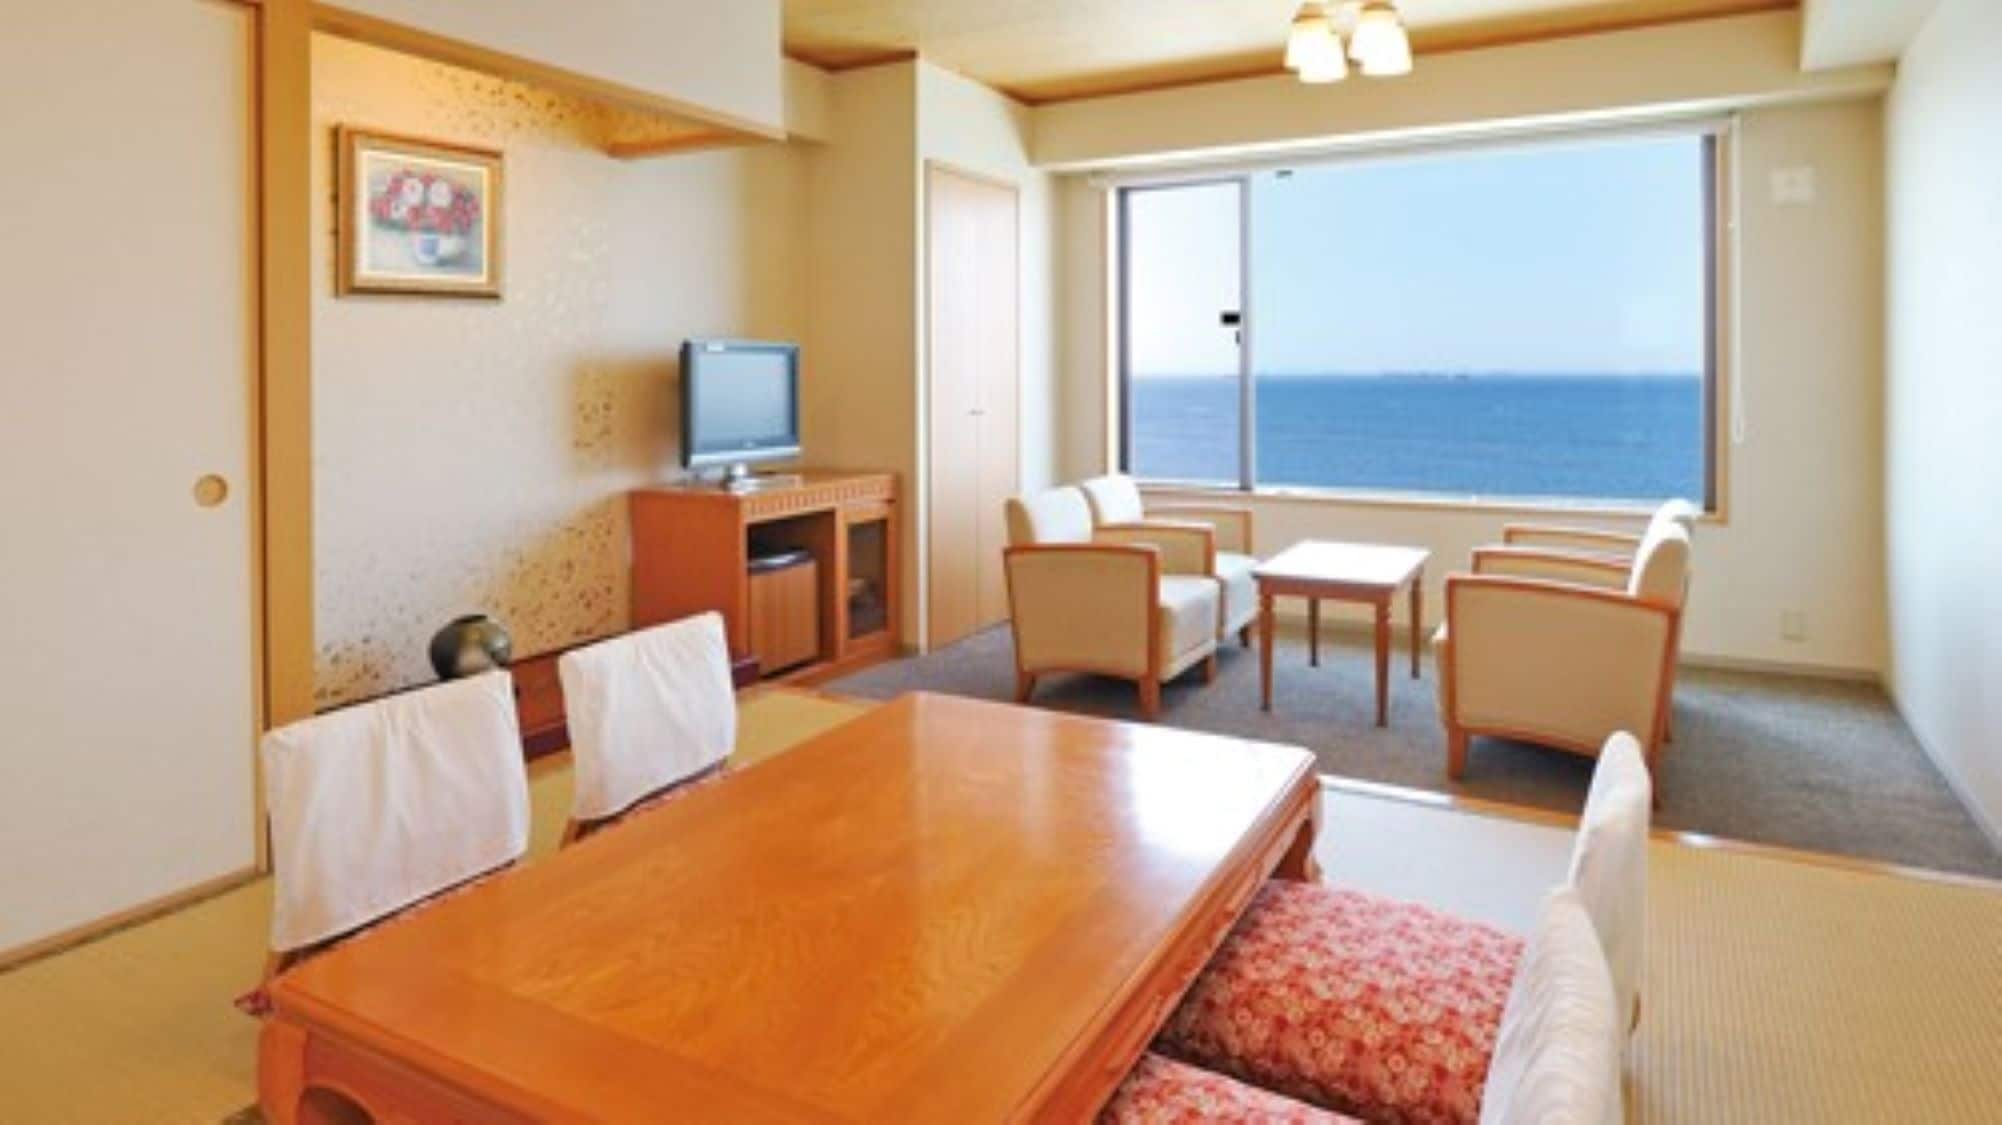 * [ห้องดีลักซ์ (ตัวอย่าง)] คุณสามารถพักผ่อนในห้องสไตล์ญี่ปุ่นหรือห้องสไตล์ตะวันตก